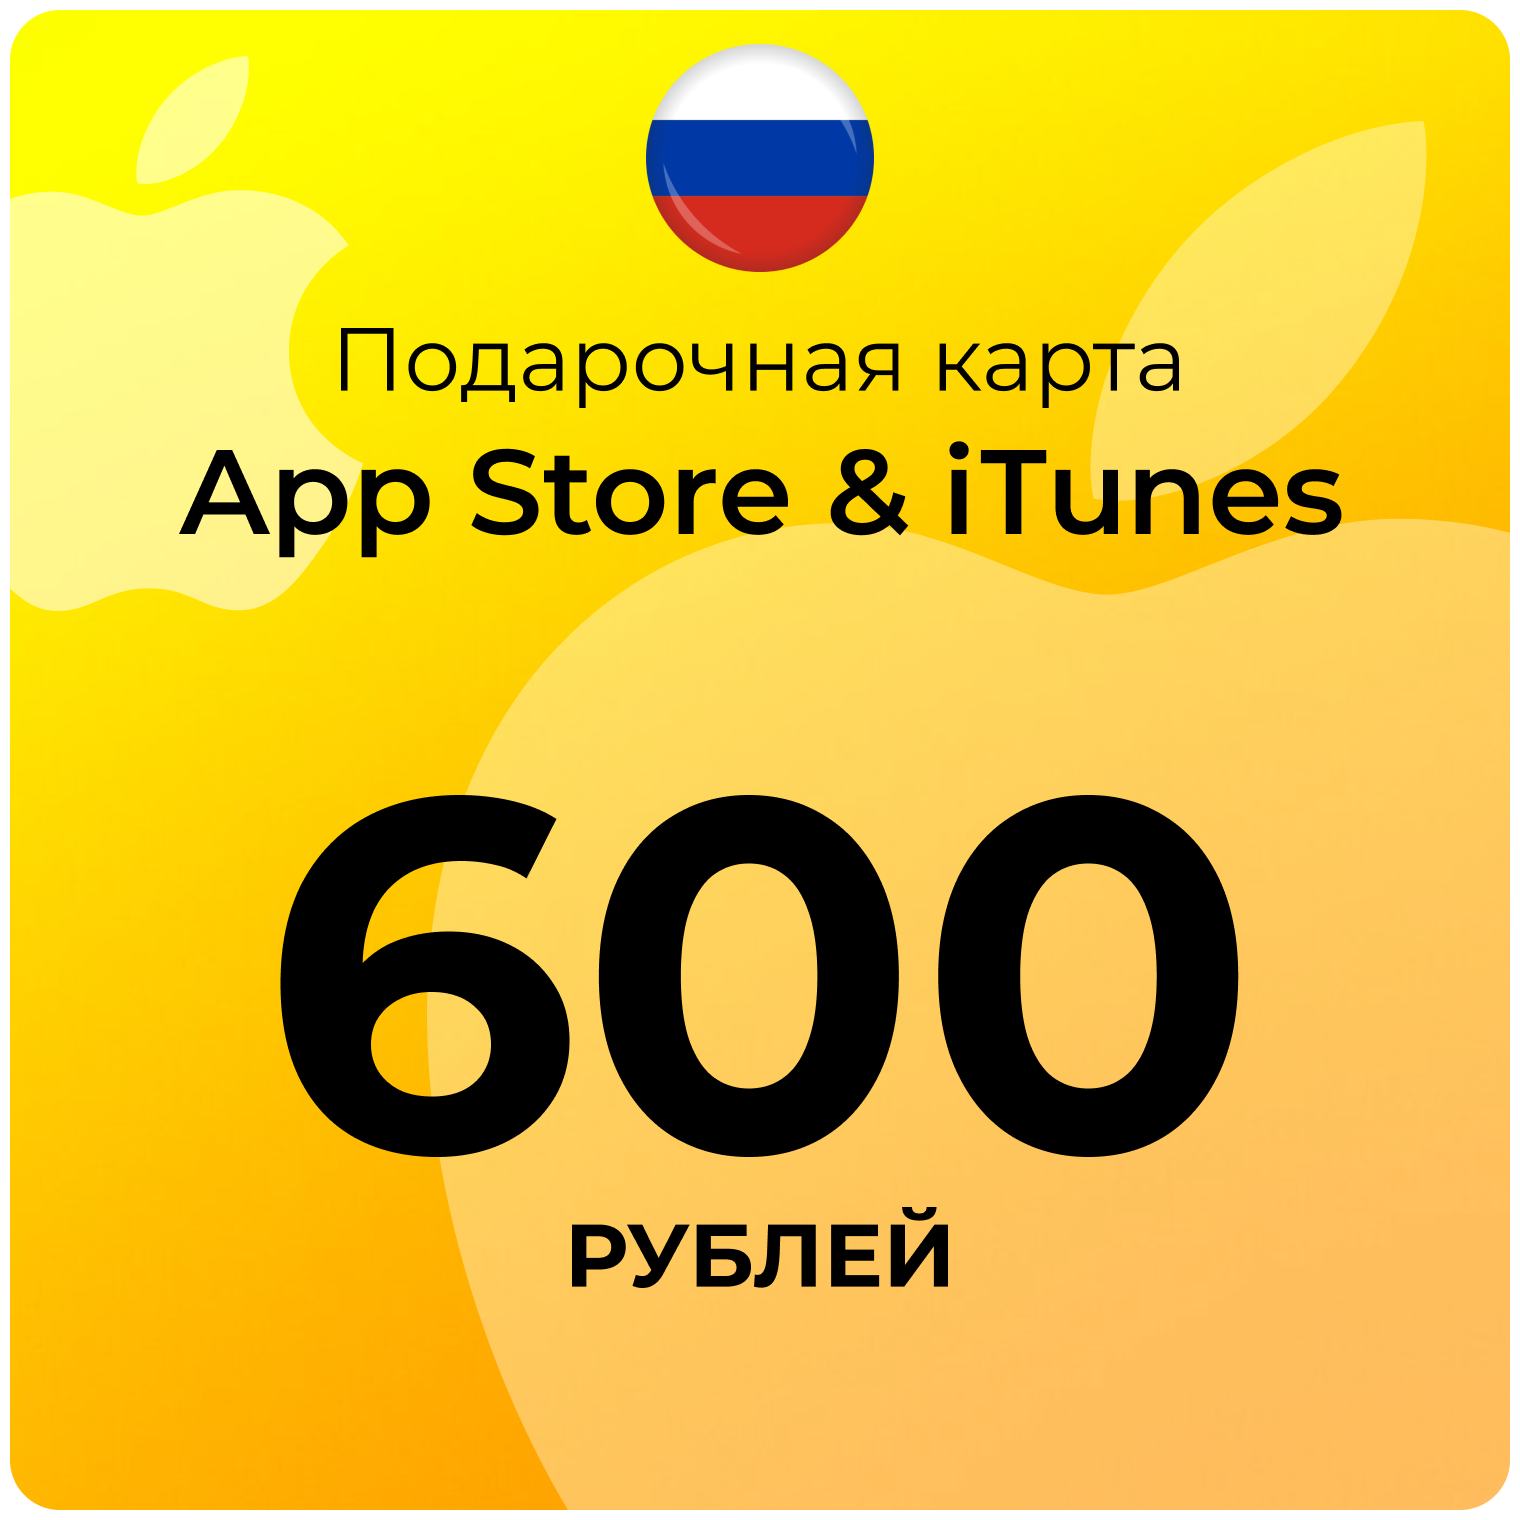 Карта для пополнения (подарочная) App Store & iTunes (Россия) 600 рублей